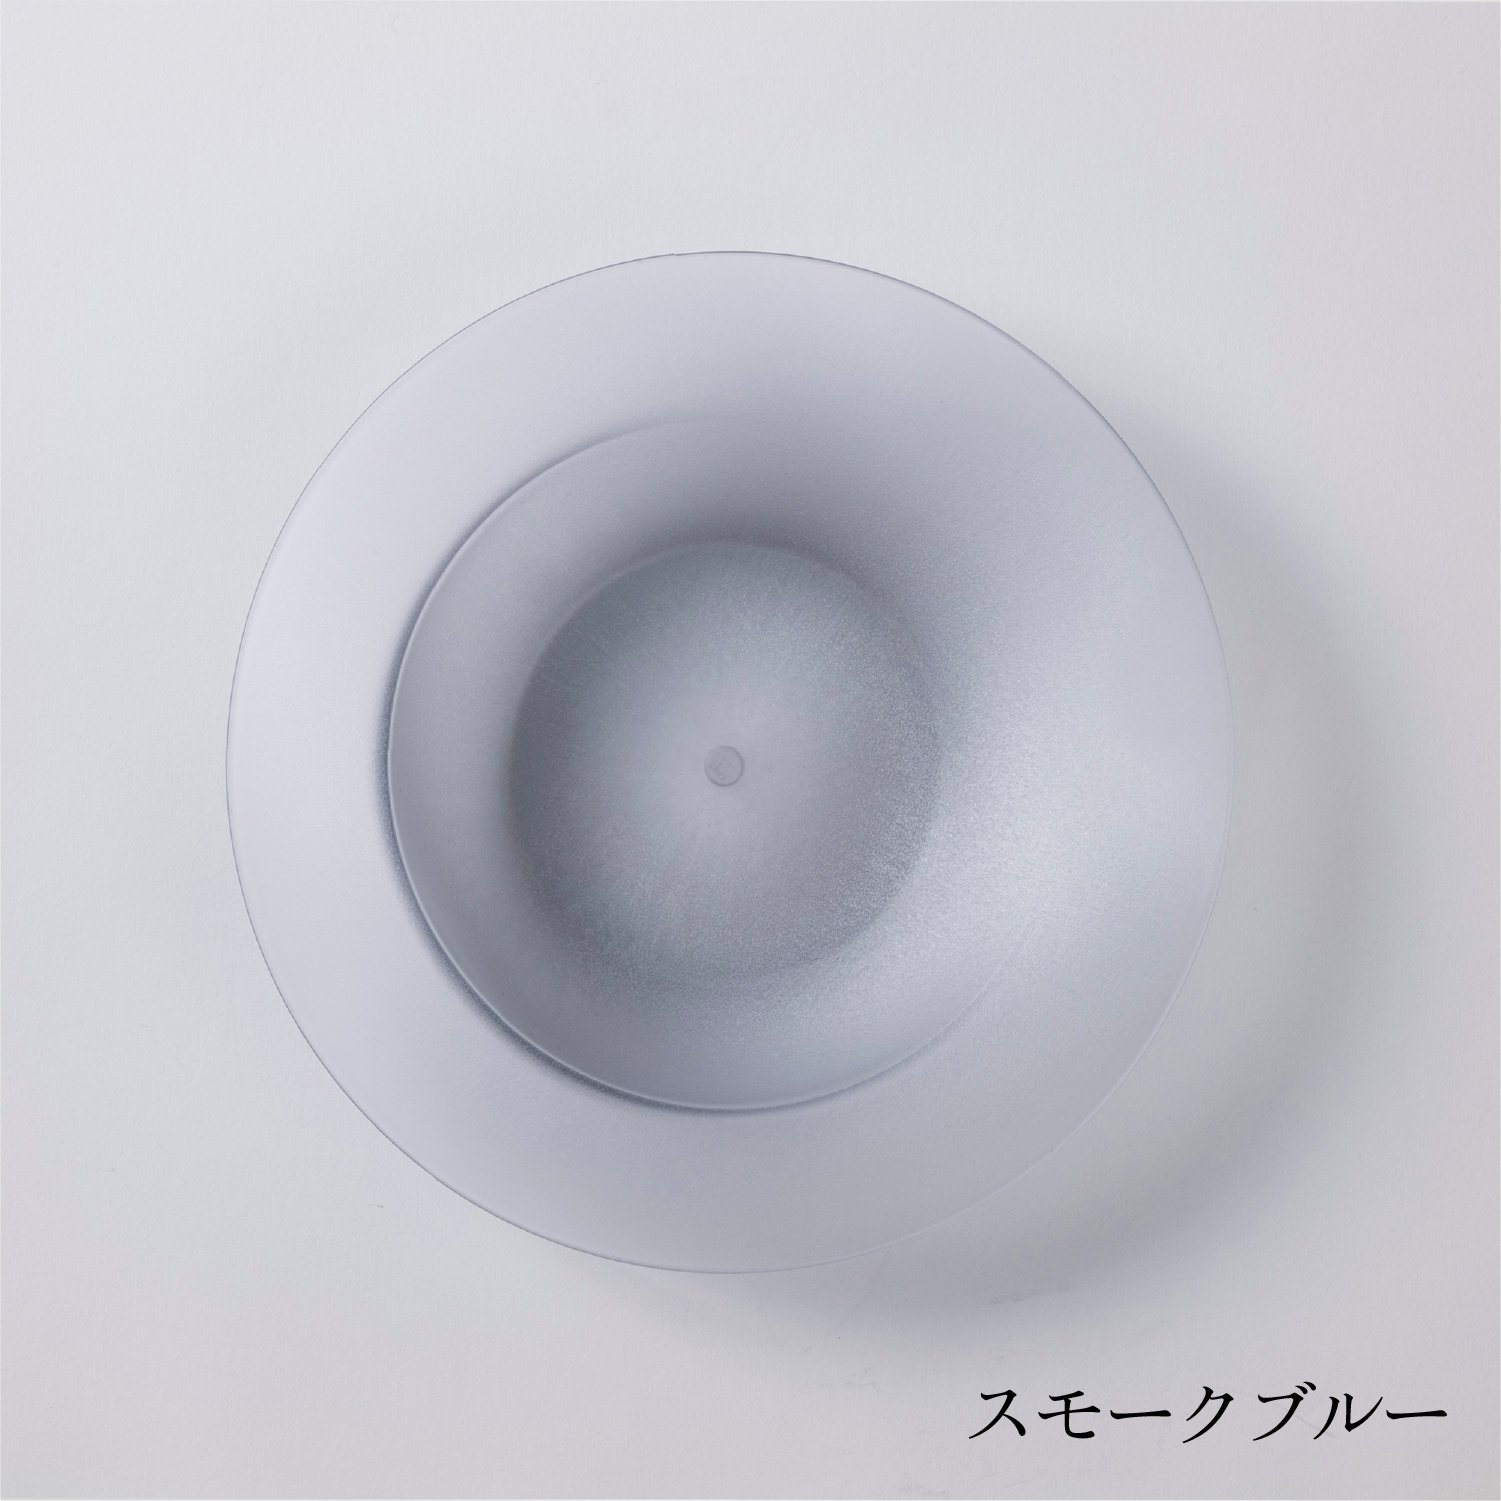 ARAS(エイラス) 深皿スクープの商品画像サムネ6 